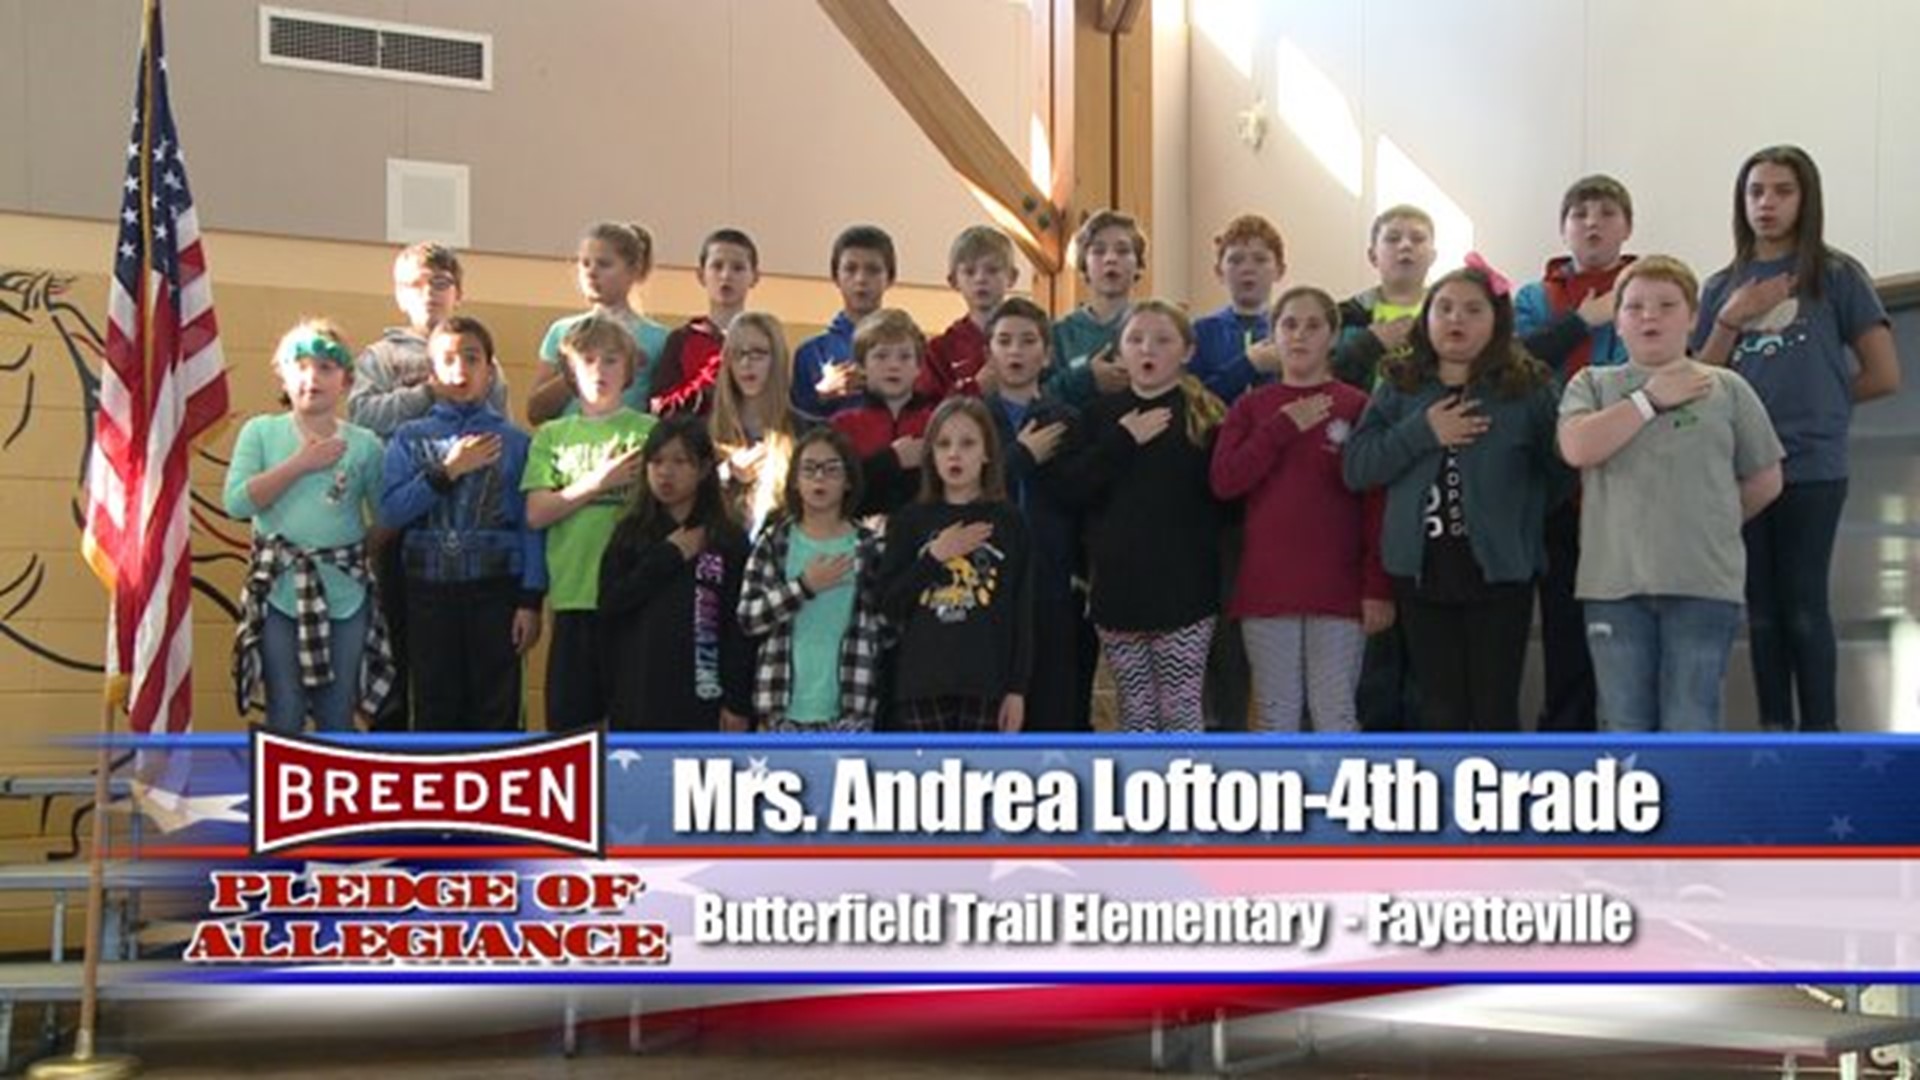 Butterfield Trail Elementary - Fayetteville, Mrs. Lofton - Fourth Grade